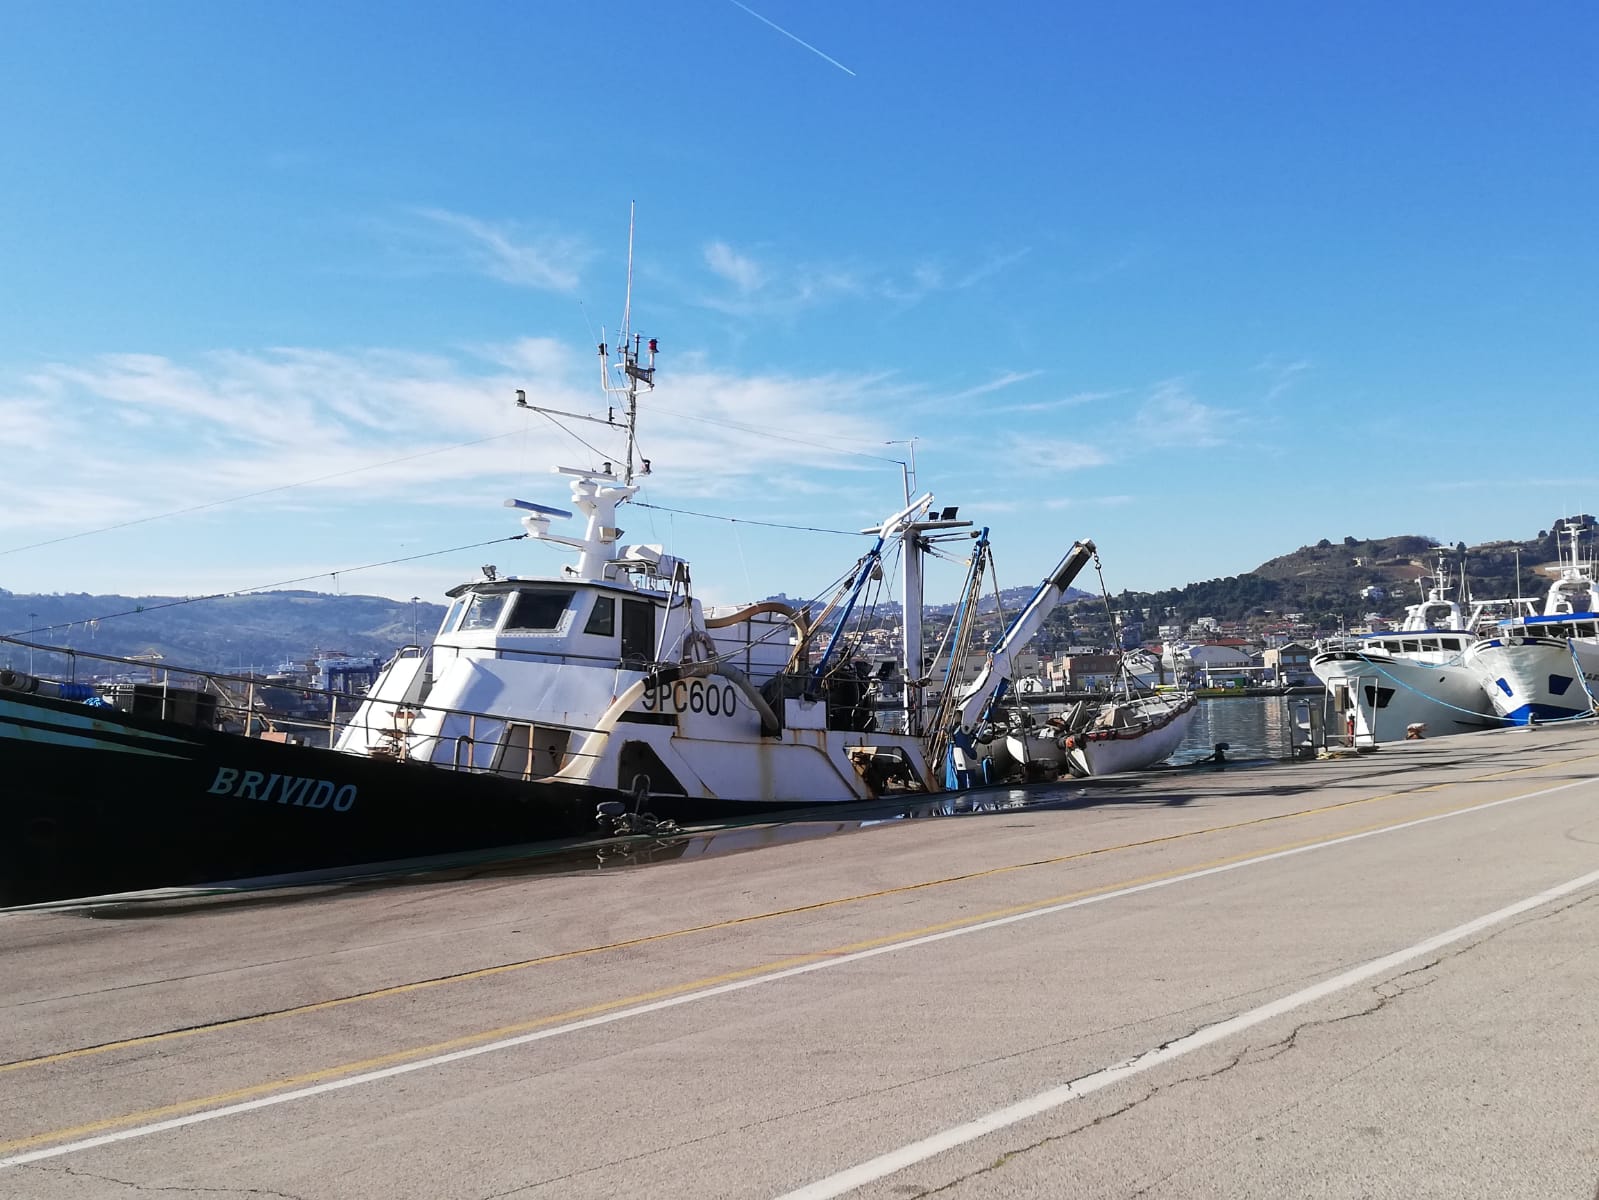 San Benedetto – Volanti ferme in porto, equipaggi in attesa dei tamponi